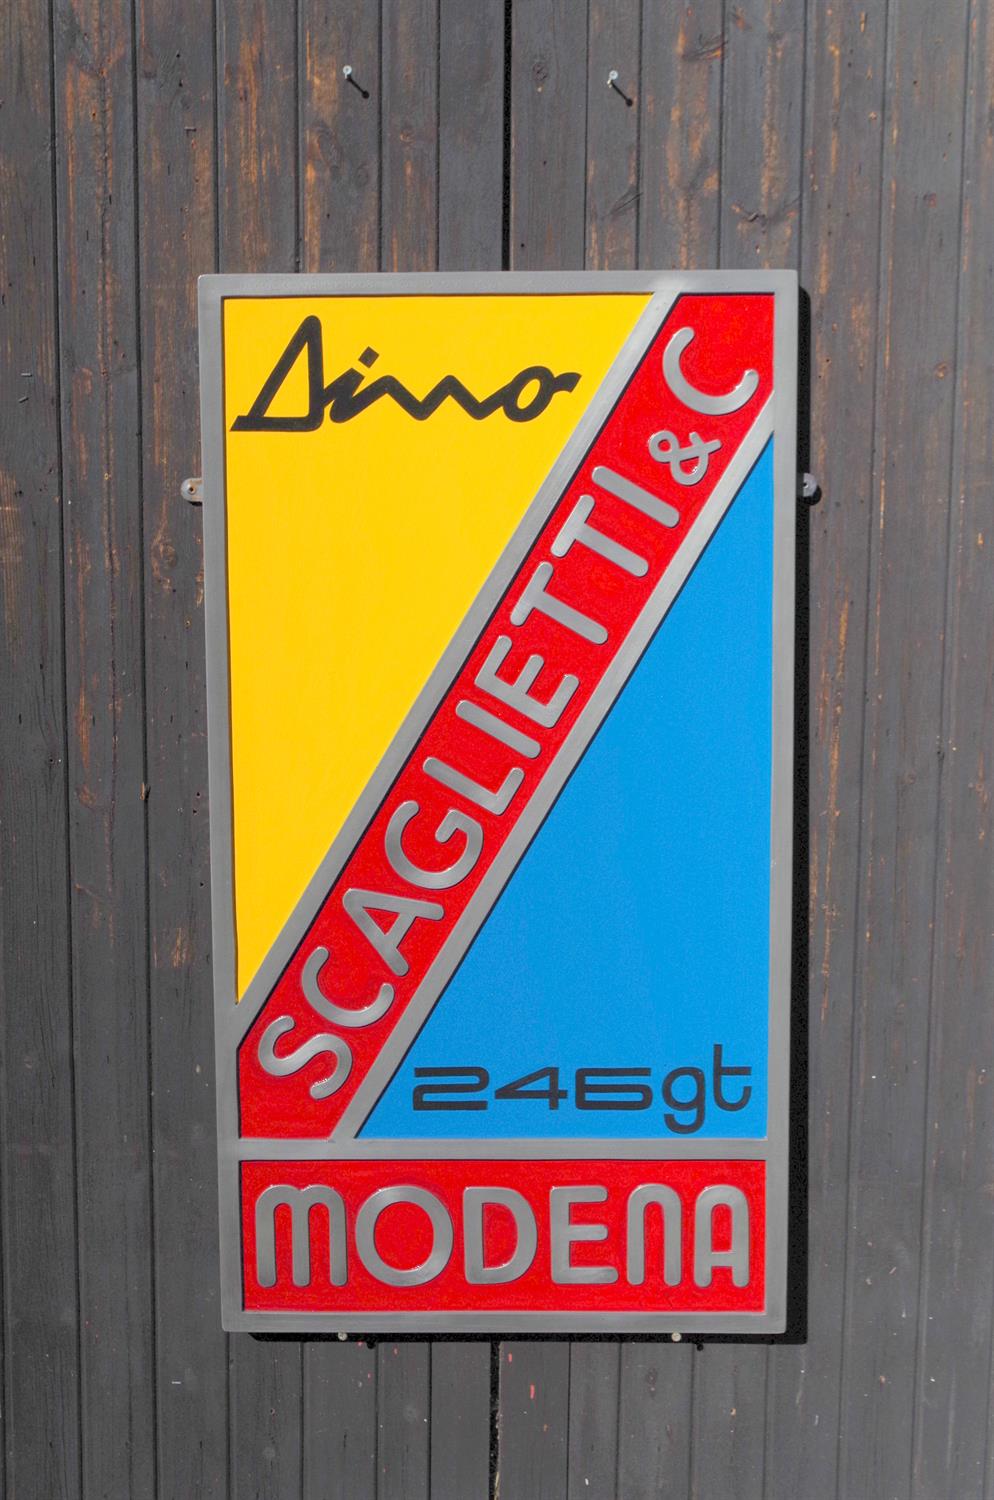 Contemporary "Scaglietti & Co.Modena" Wall Sign - Image 3 of 3